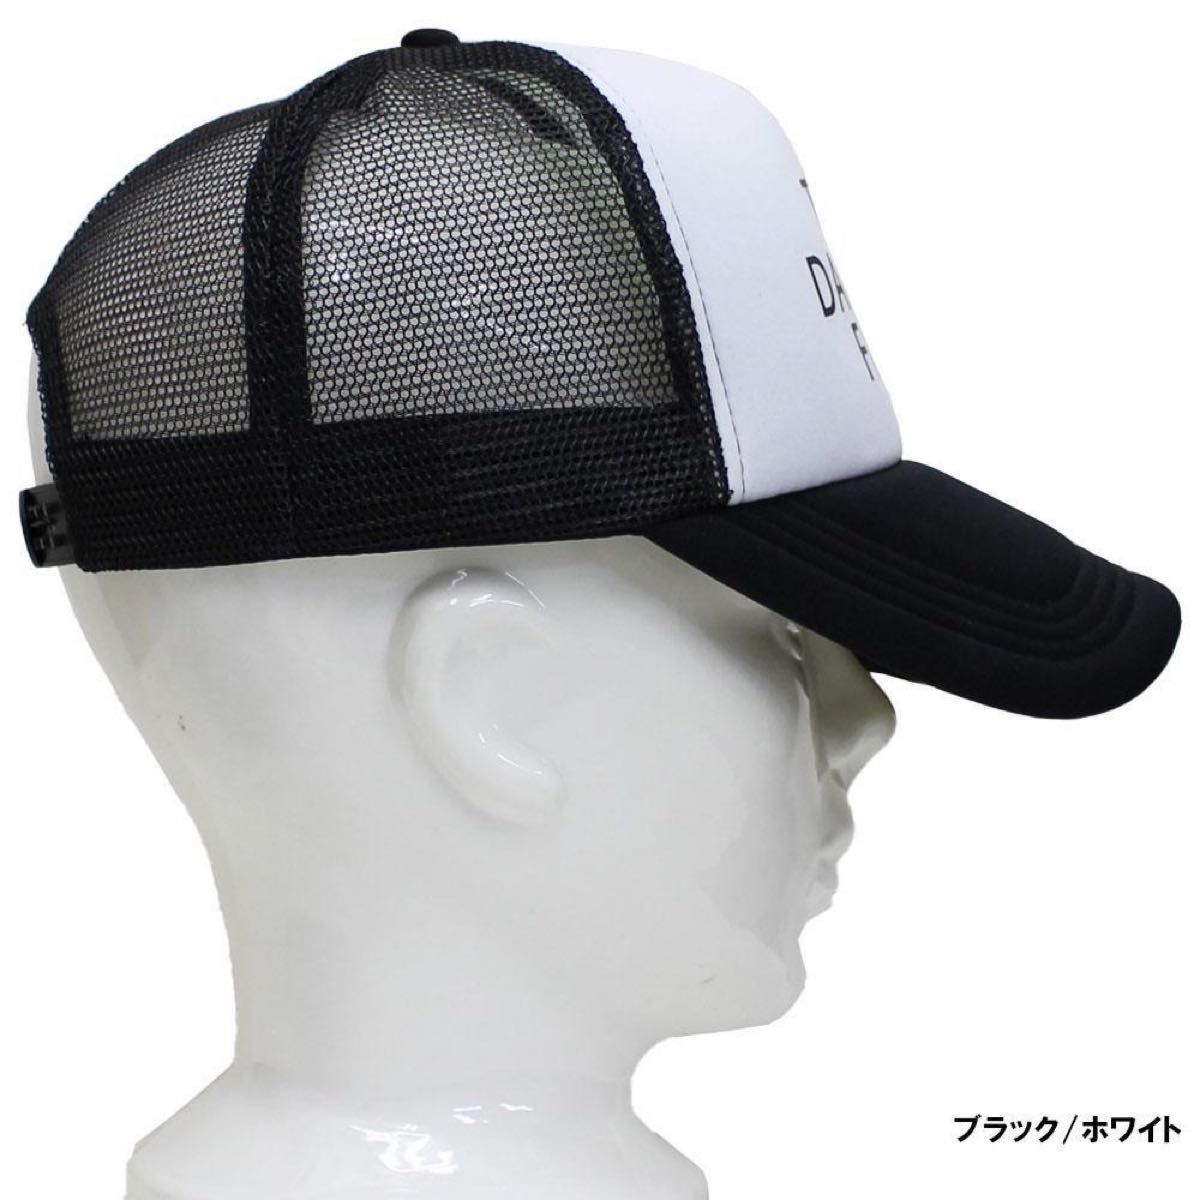 パロディ ダースフェイス メッシュキャップ 男女兼用 メンズキャップ レディースキャップ 野球帽 アウトドア ブラックホワイト